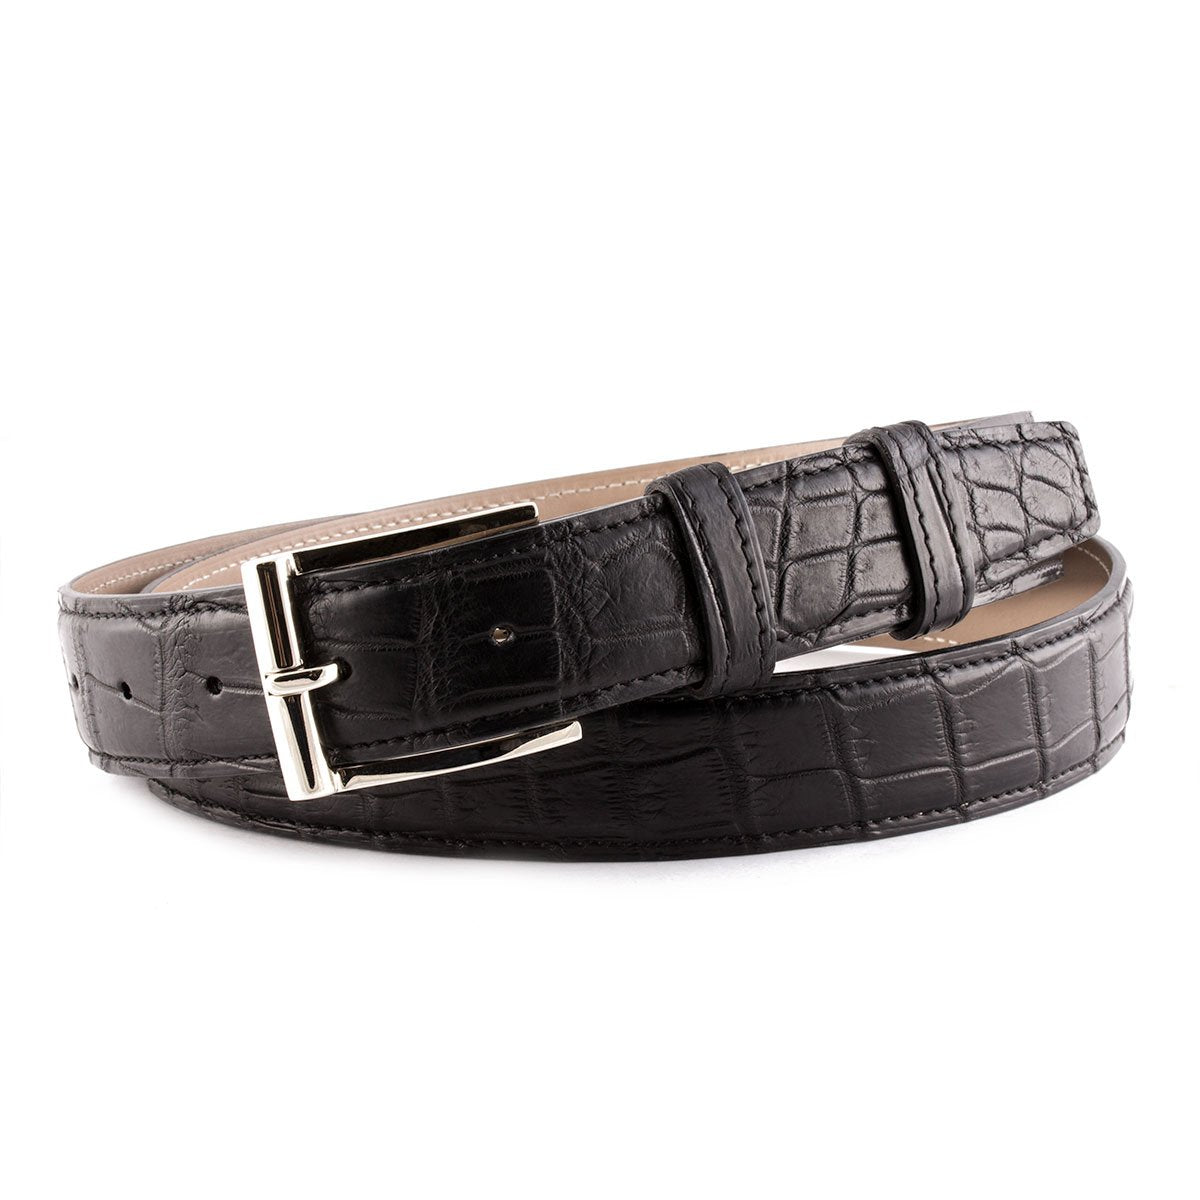 Ceinture cuir classique - Alligator - watch band leather strap - ABP Concept -